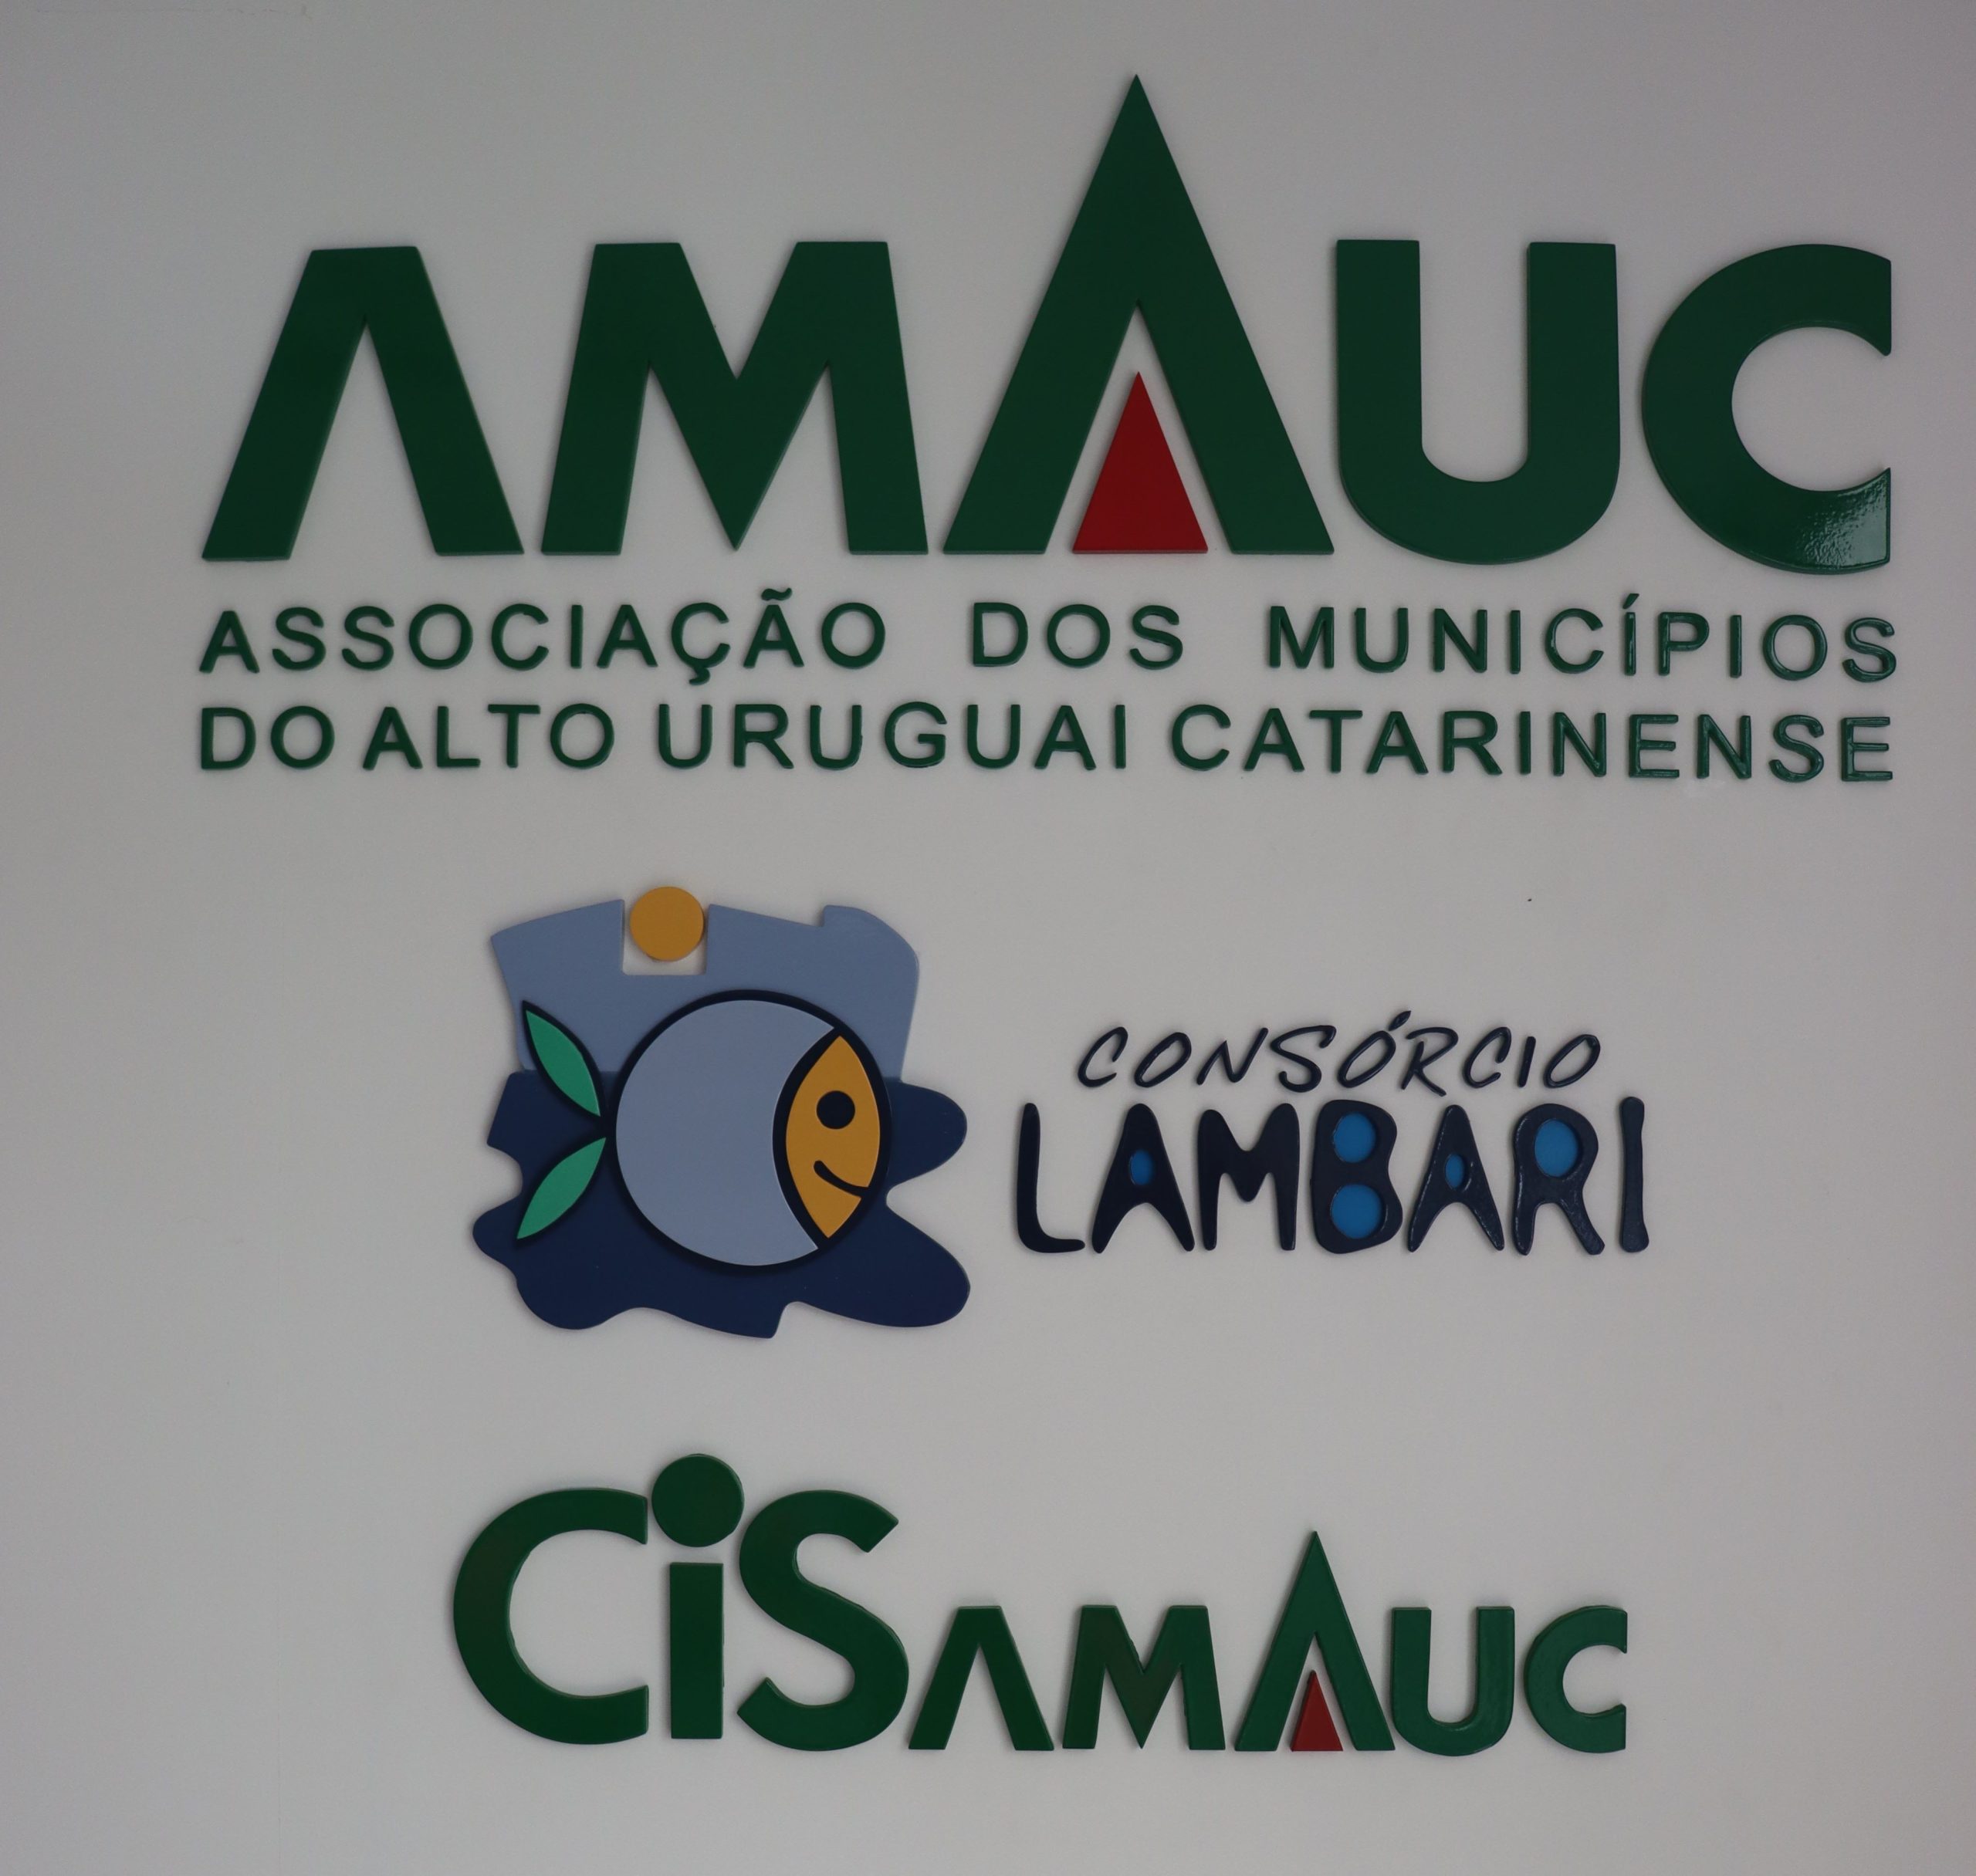 You are currently viewing Assembleia da Amauc, CIS e Consórcio Lambari será nesta sexta-feira, em Irani